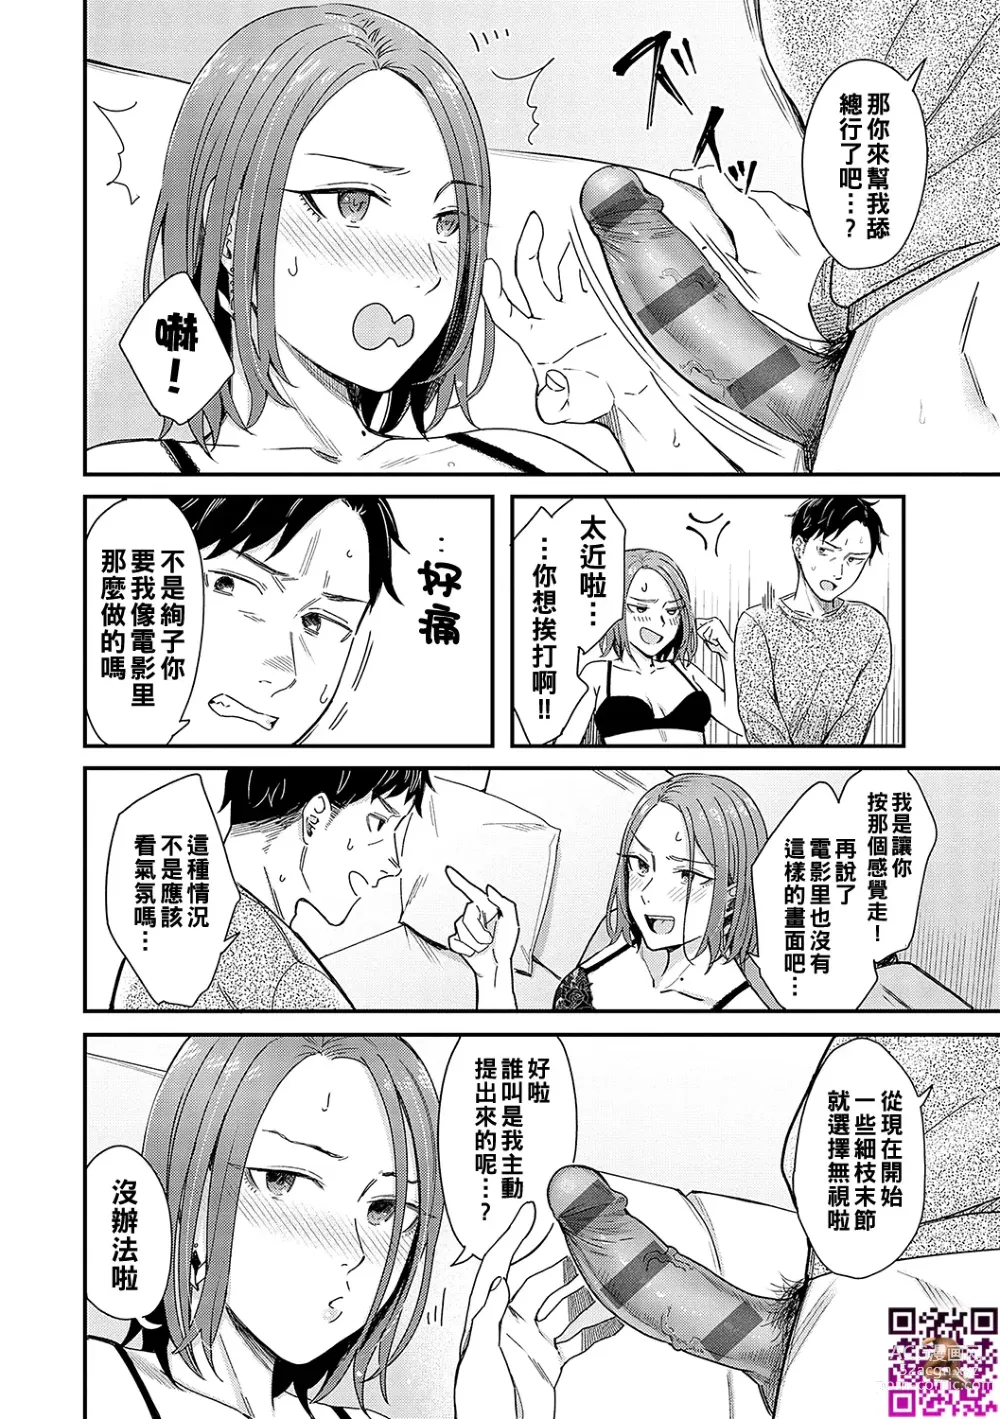 Page 16 of manga Kudaranai Renai Eiga no You ni... - Like a crappy romance movie...